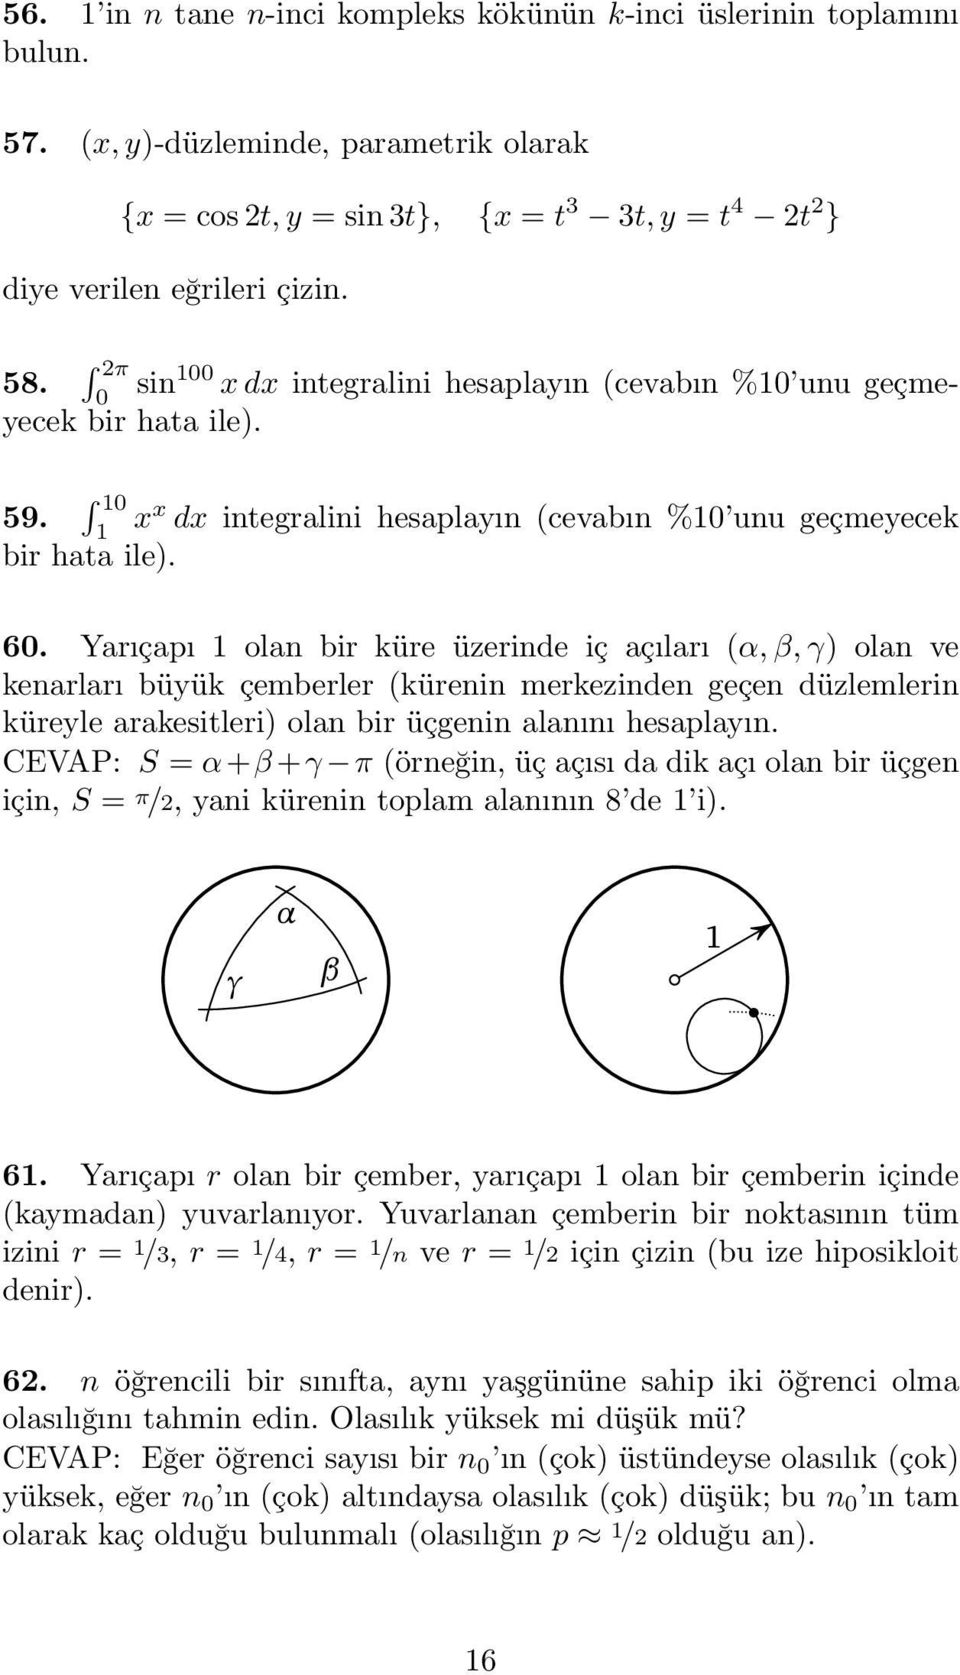 Yarıçapı olan bir küre üzerinde iç açıları (α, β, γ) olan ve kenarları büyük çemberler (kürenin merkezinden geçen düzlemlerin küreyle arakesitleri) olan bir üçgenin alanını hesaplayın.